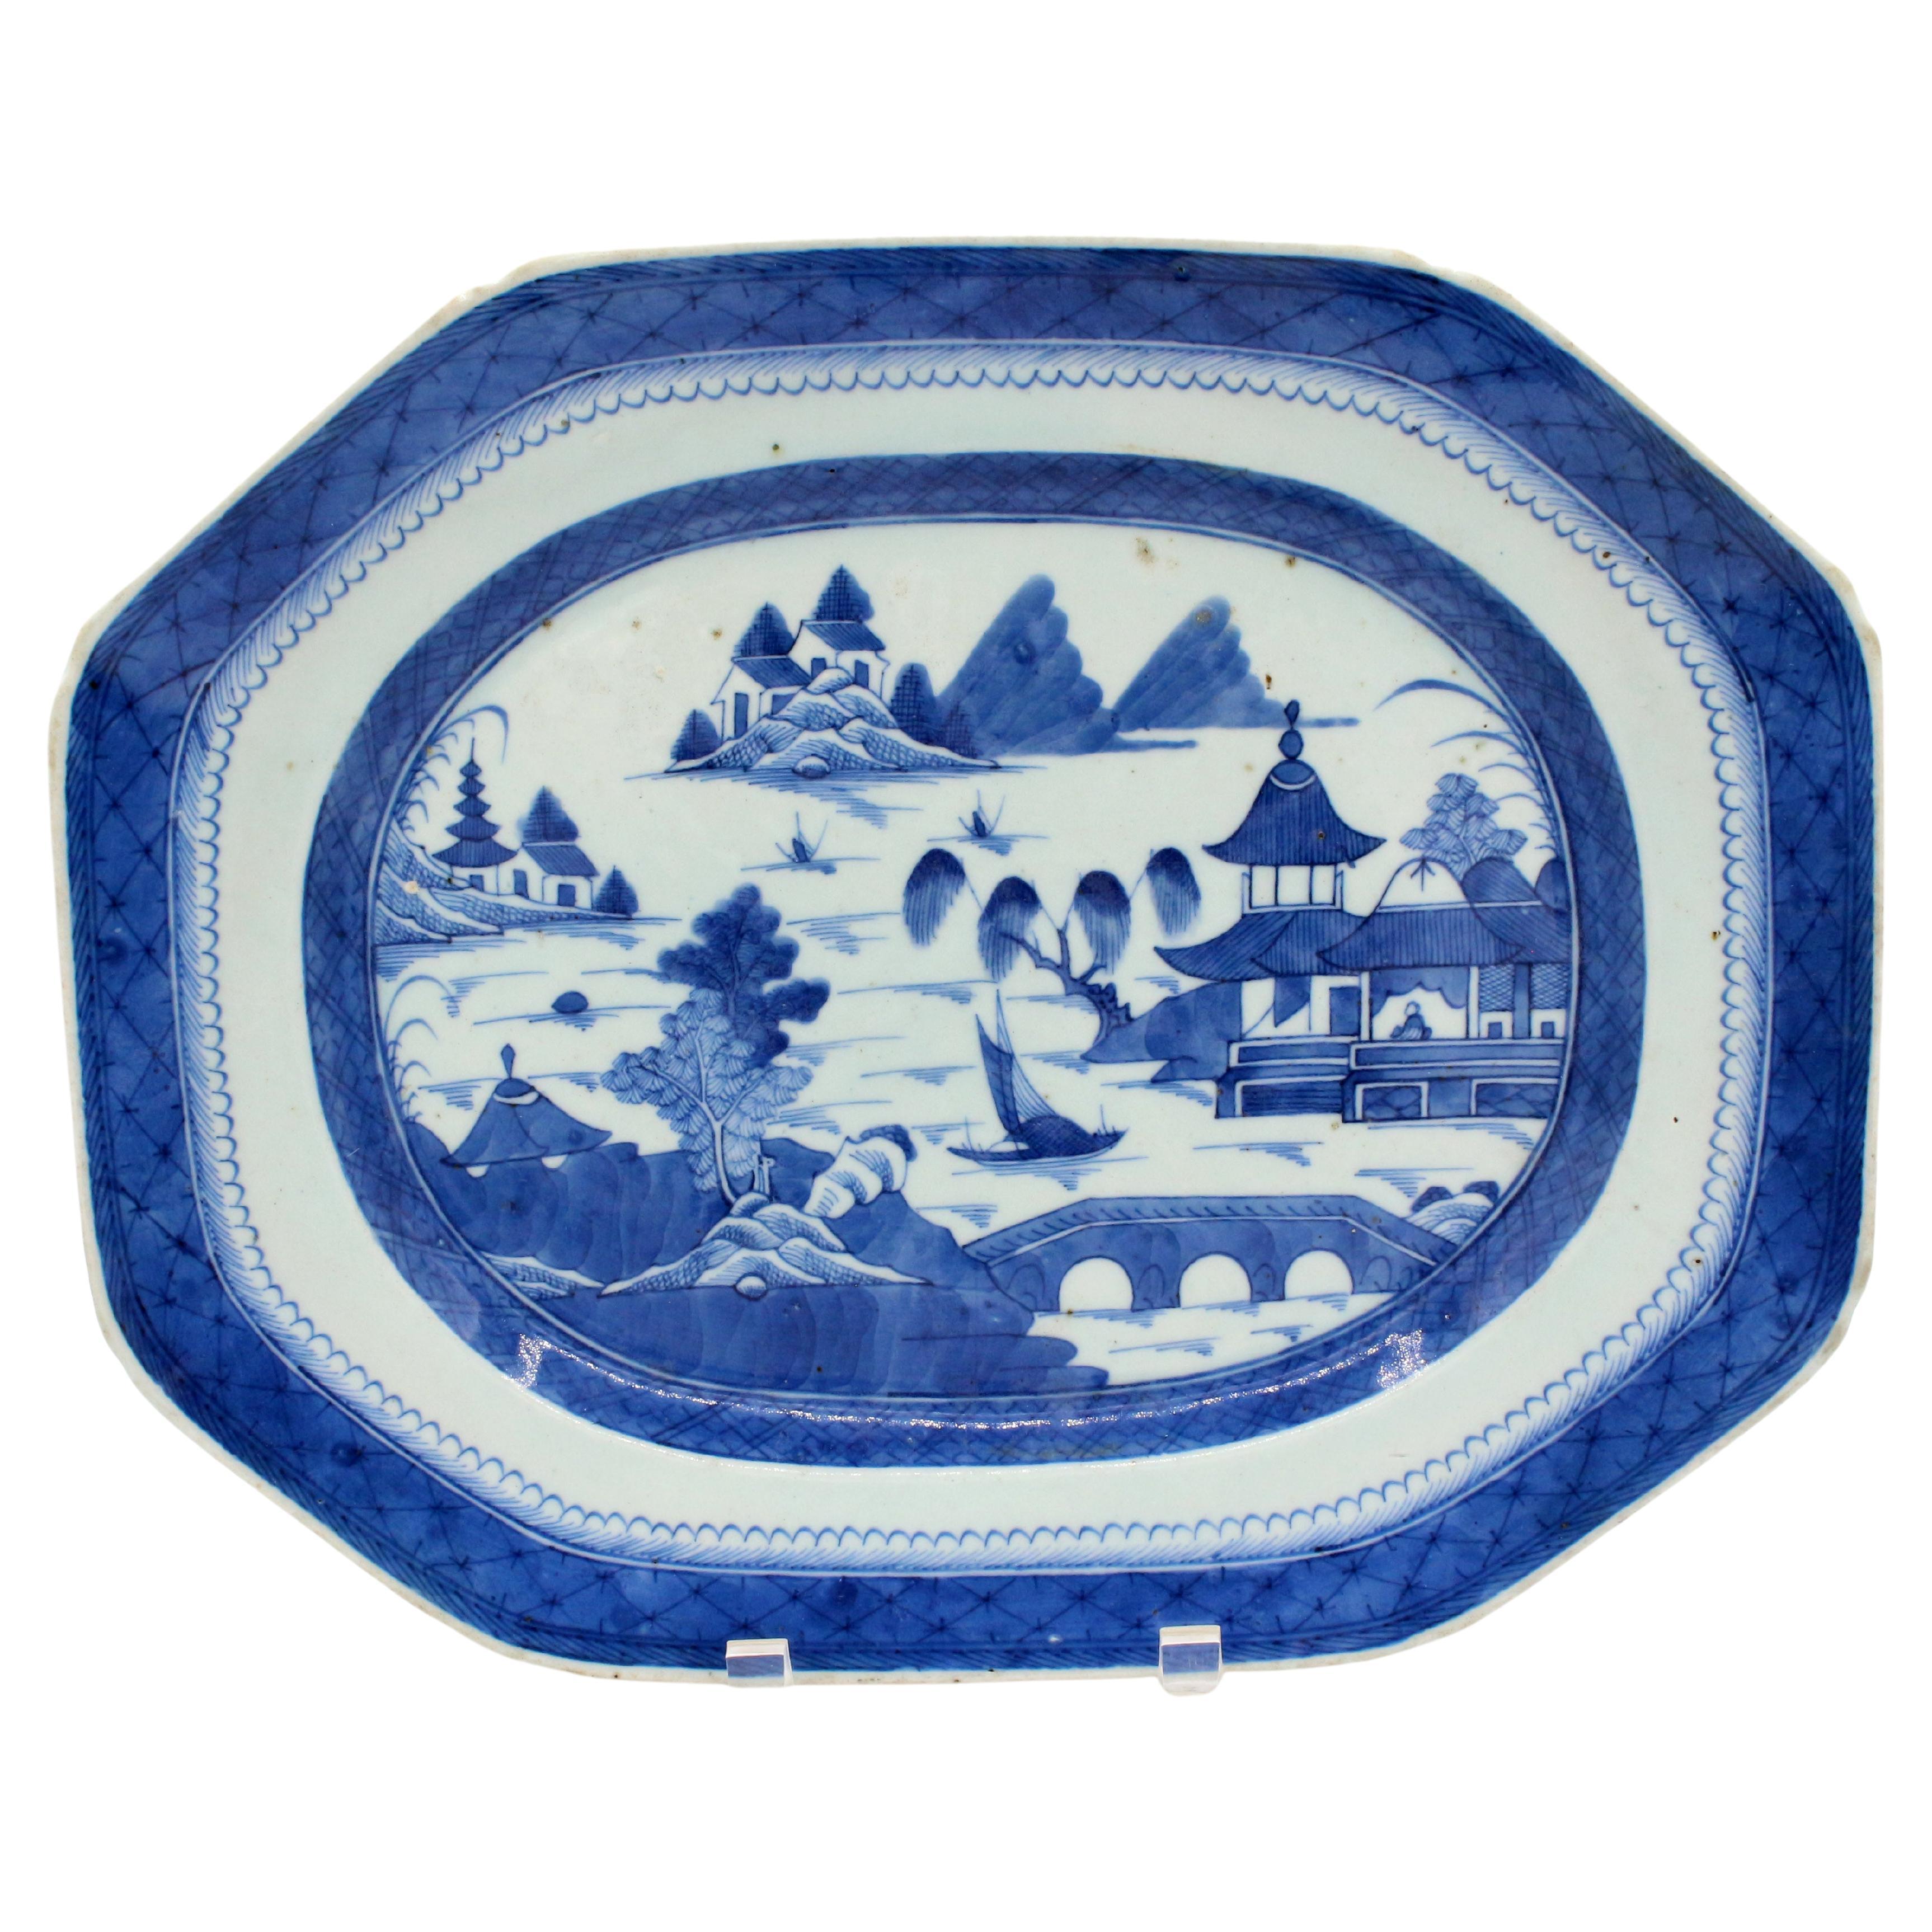 Blaue Kanton-Teller aus der Zeit um 1800-30, chinesischer Export